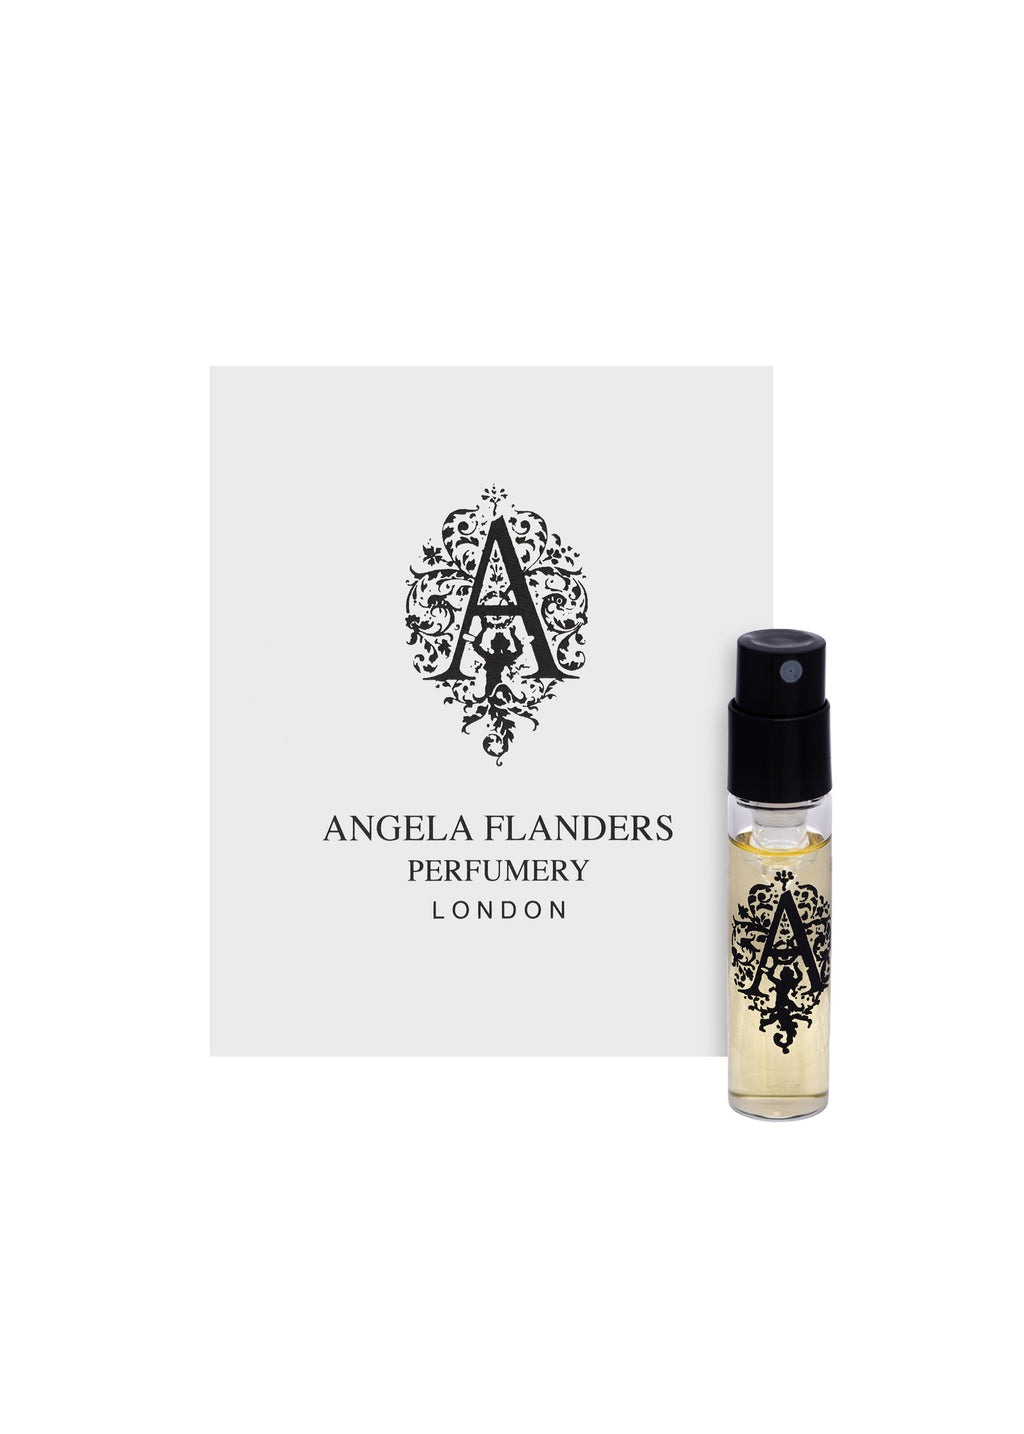 Angela Flanders Bois de Seville Eau de Parfum Sample